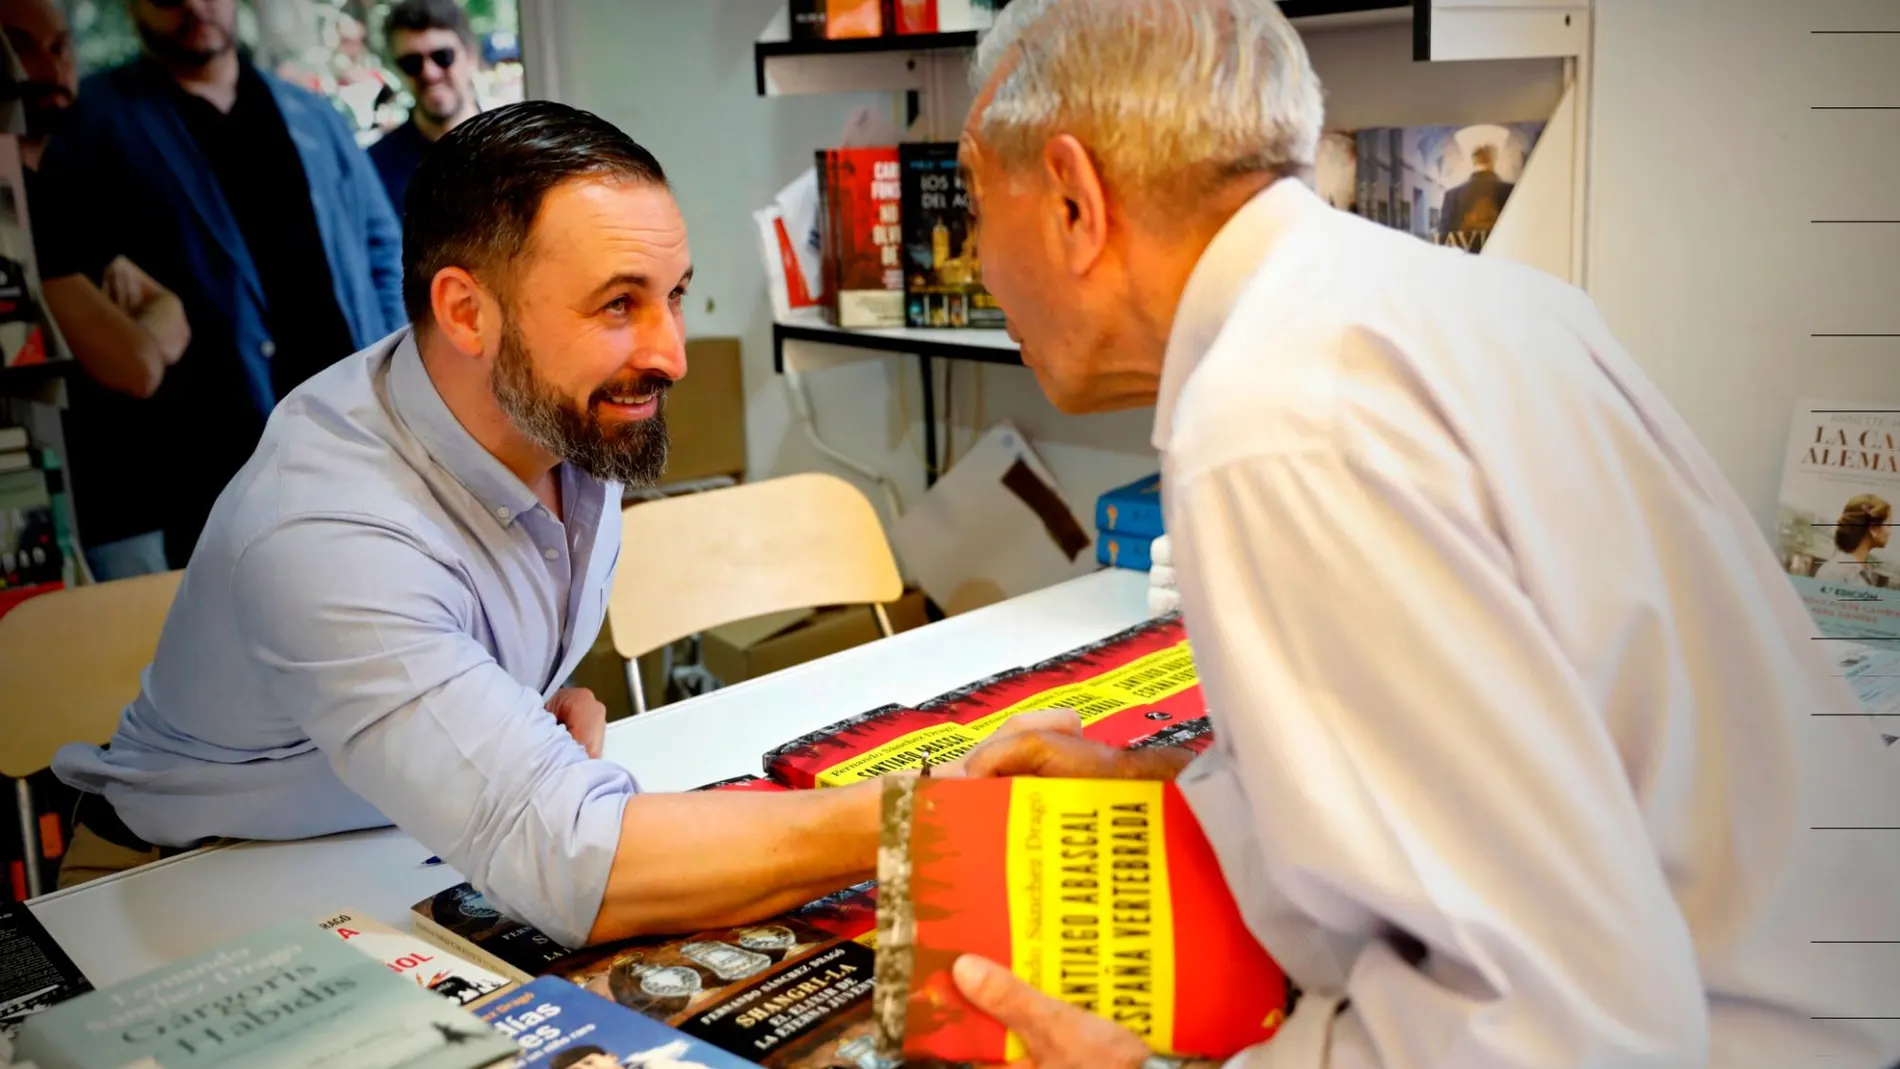 El presidente de Vox, Santiago Abascal, ha firmado libros junto a Fernando Sánchez Dragó en la Feria del Libro de Madrid/Gonzalo Pérez